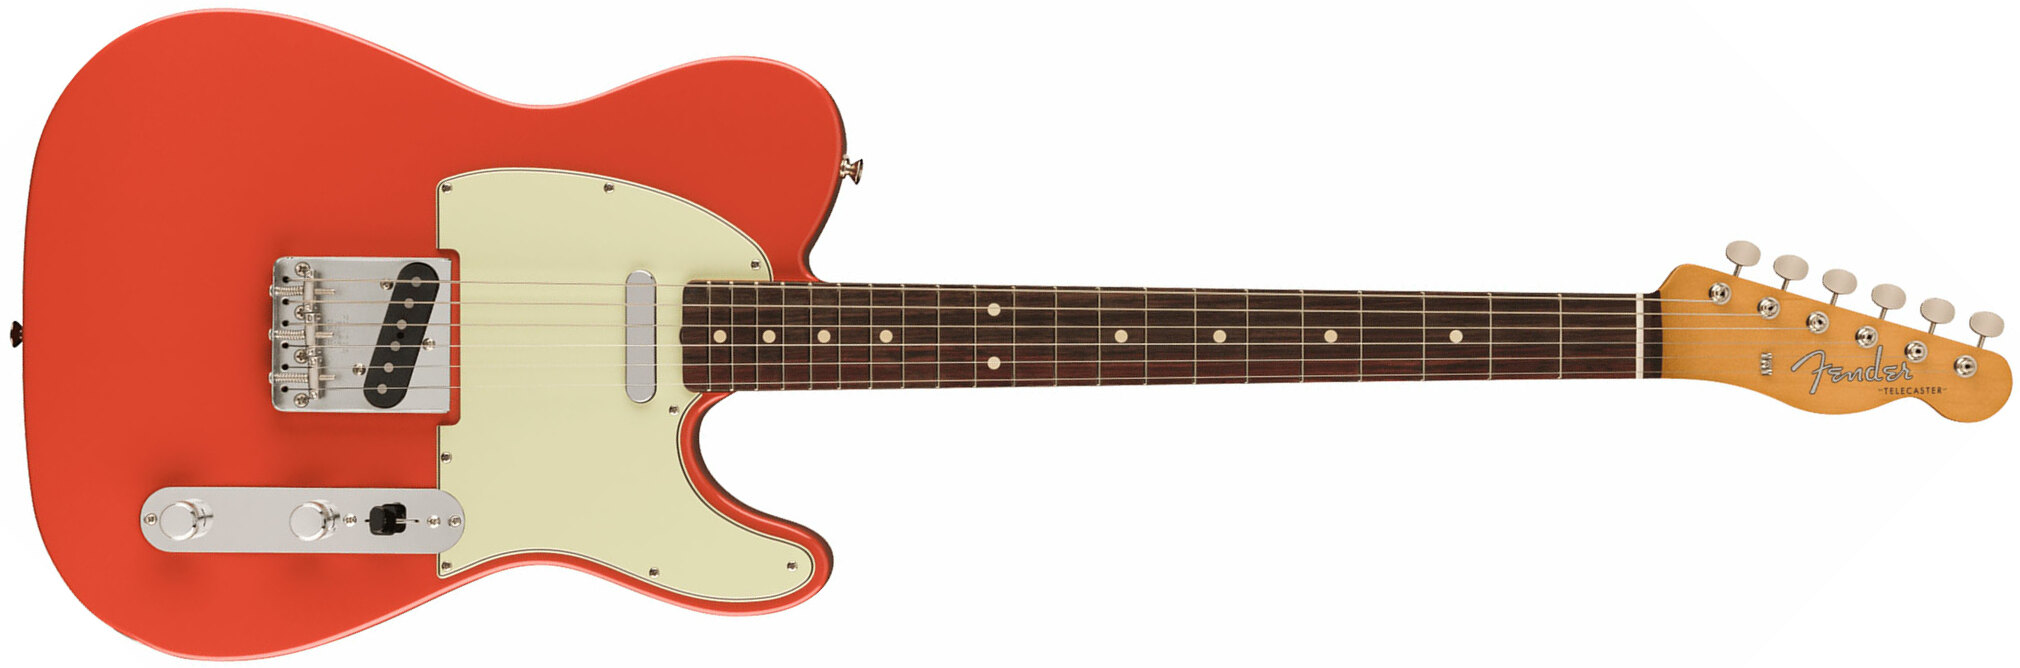 Fender Tele 60s Vintera 2 Mex 2s Ht Rw - Fiesta Red - Televorm elektrische gitaar - Main picture